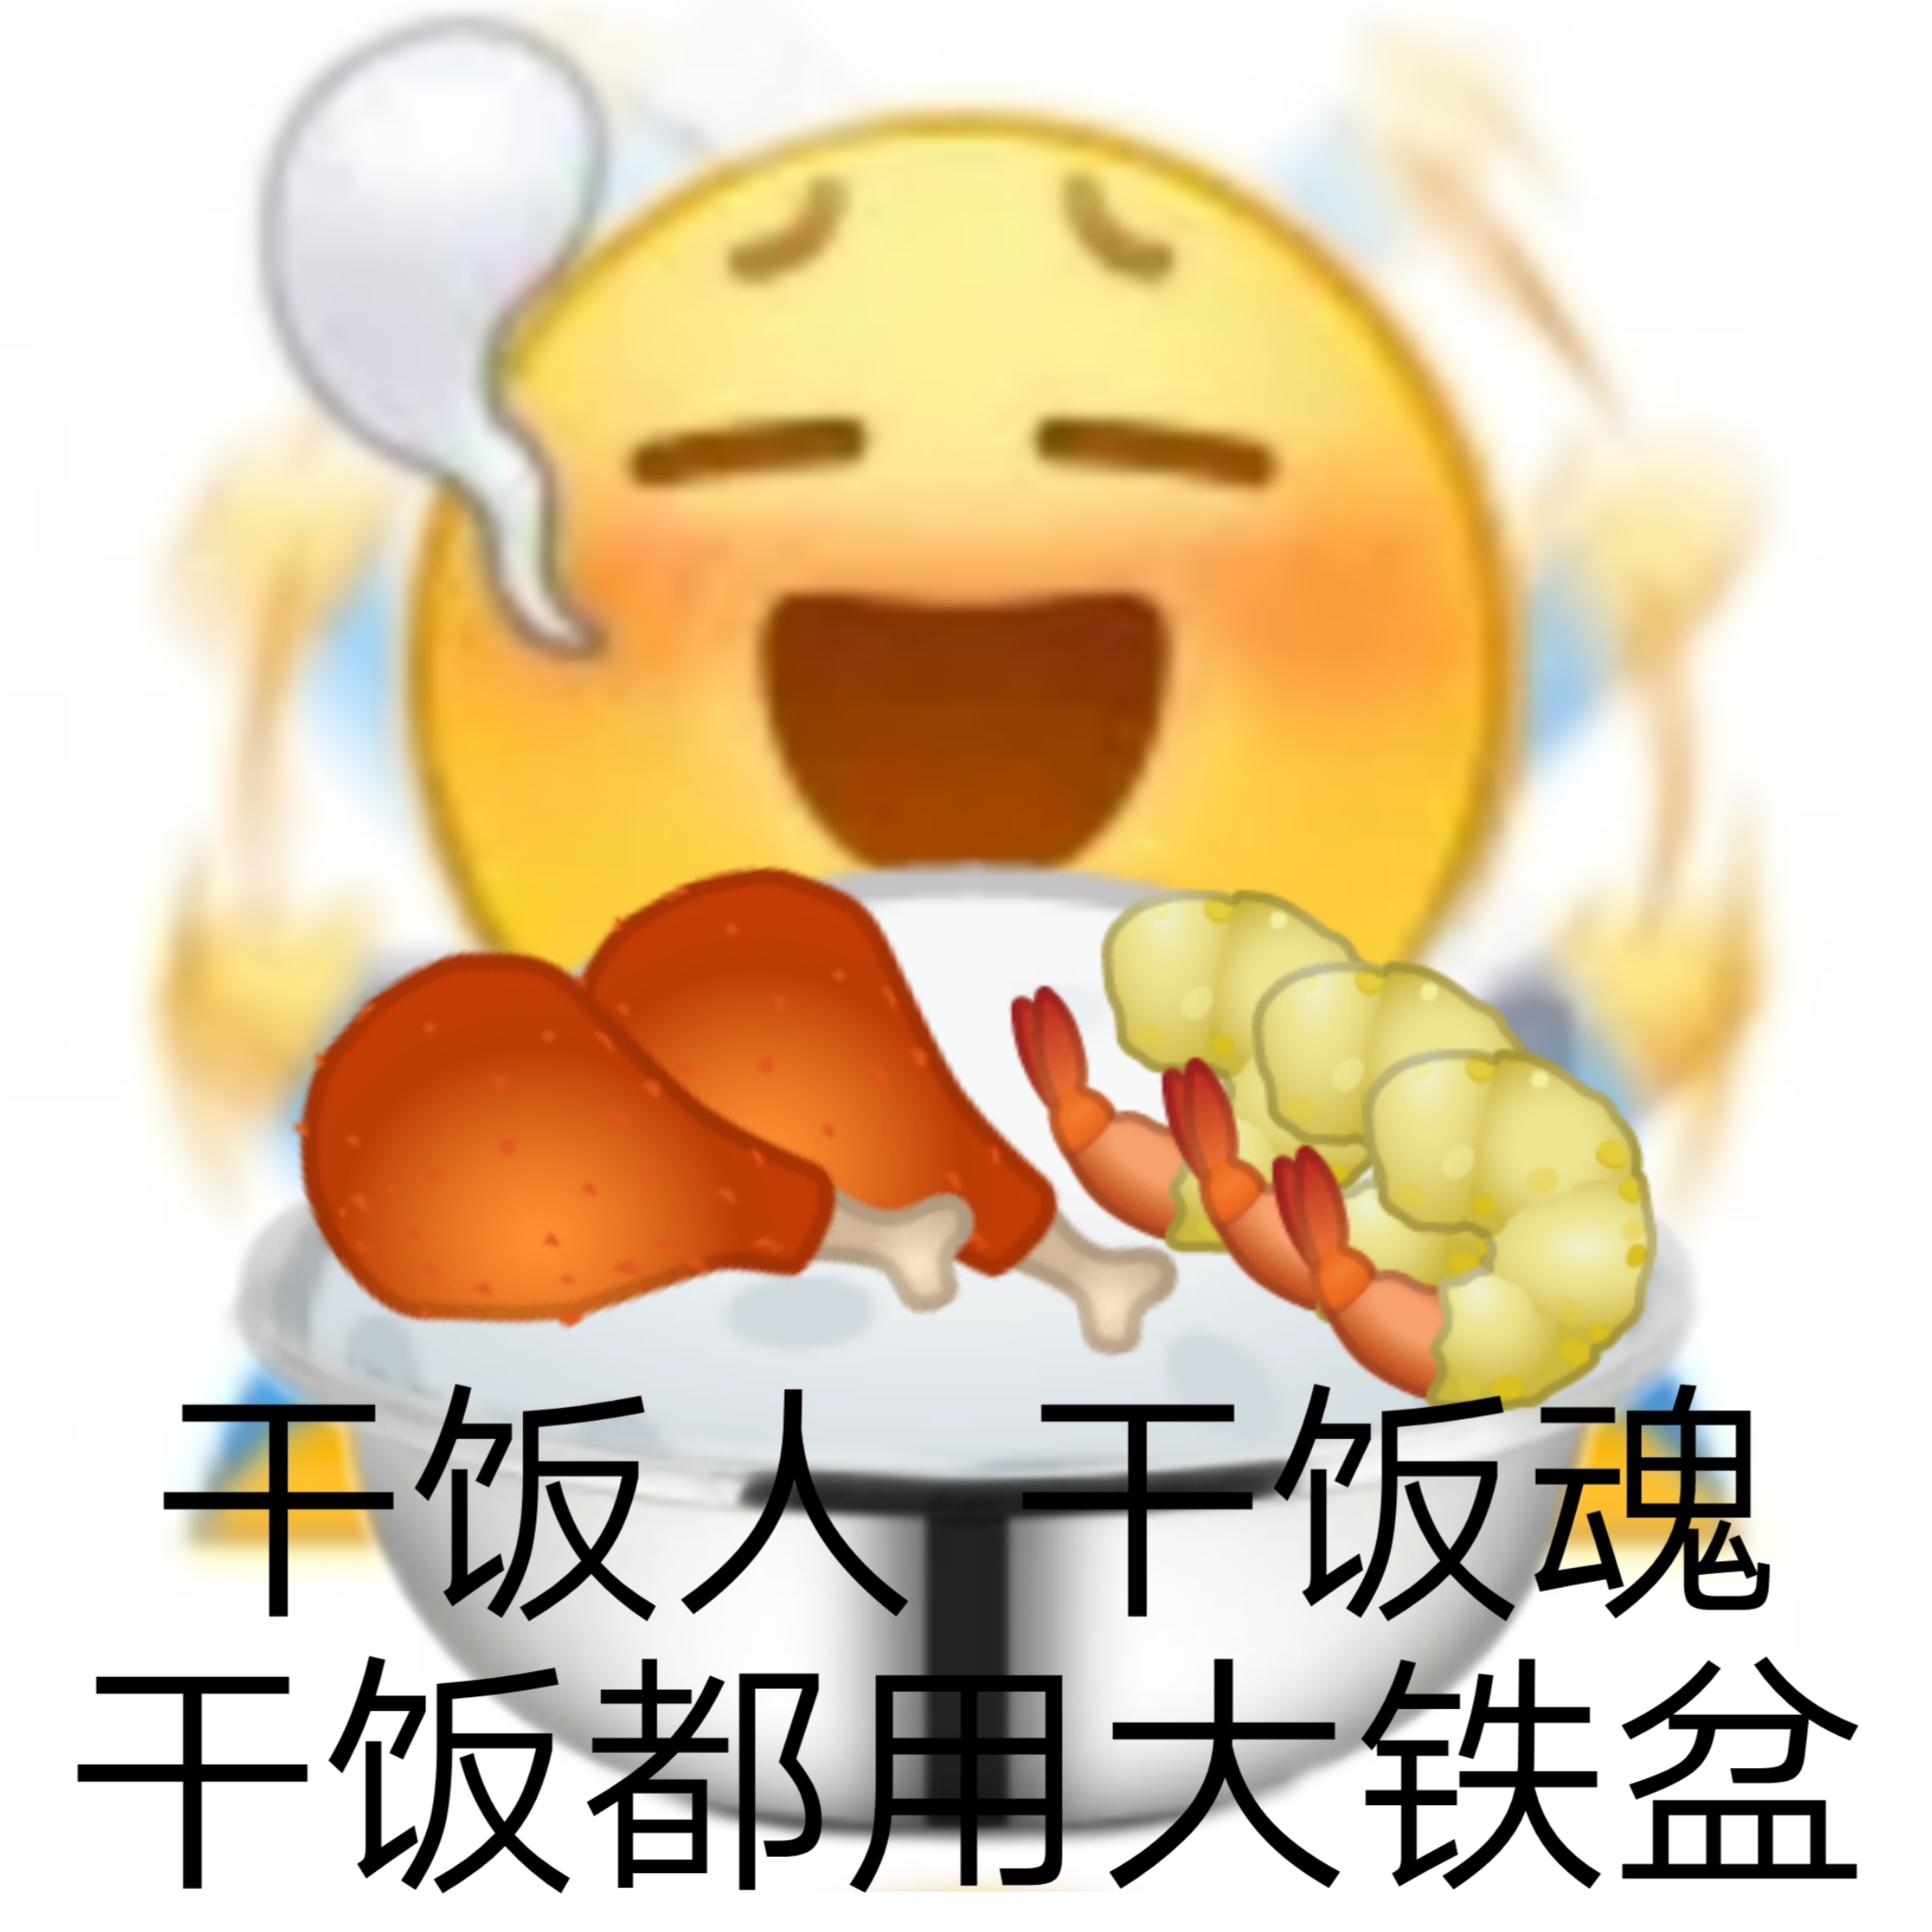 干饭的emoji图片